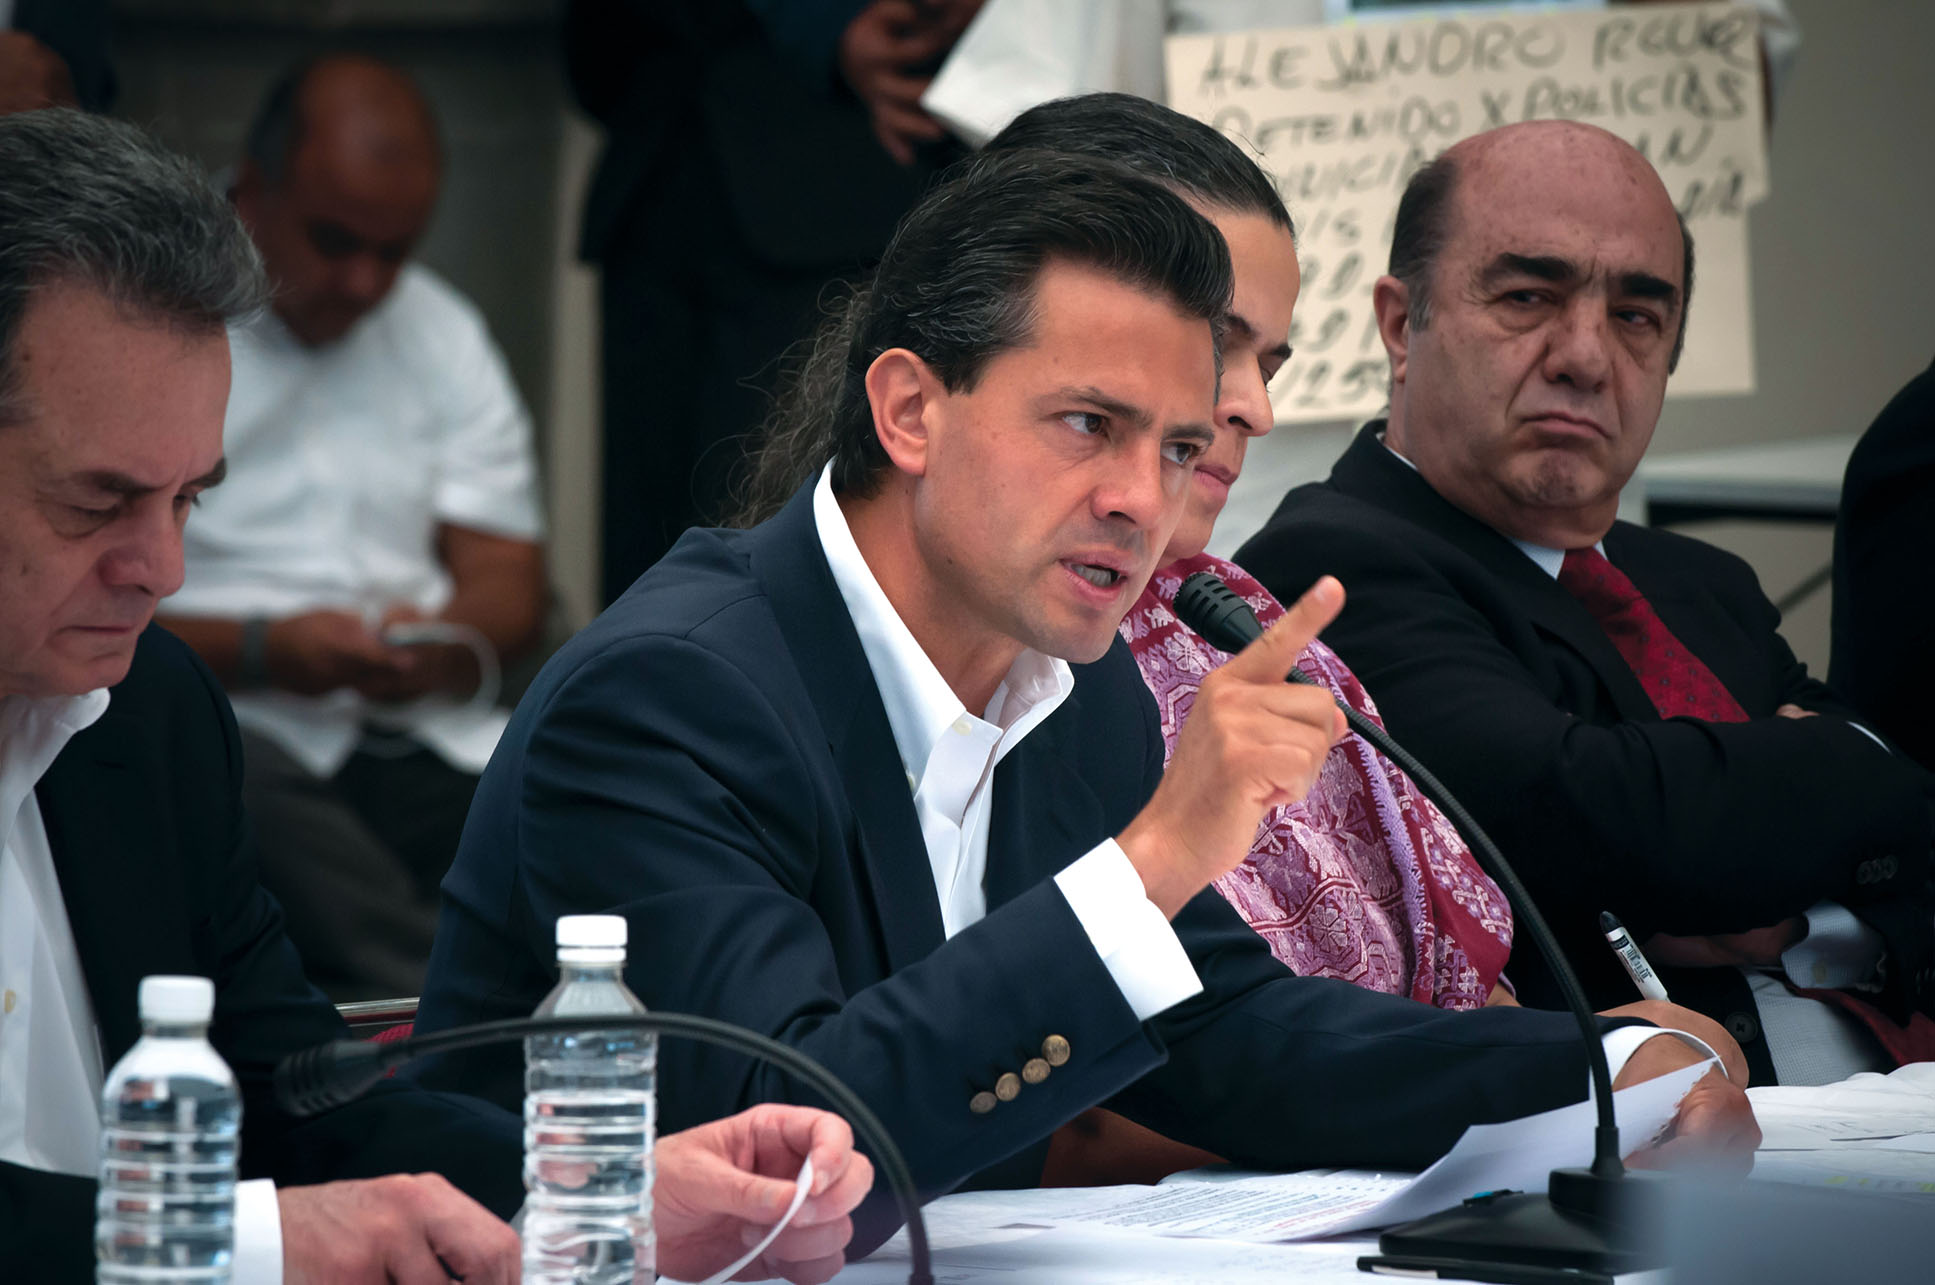 Mexico’s president, Enrique Peña Nieto, at a press conference in 2014. (Photo by Eneas de Troya.)